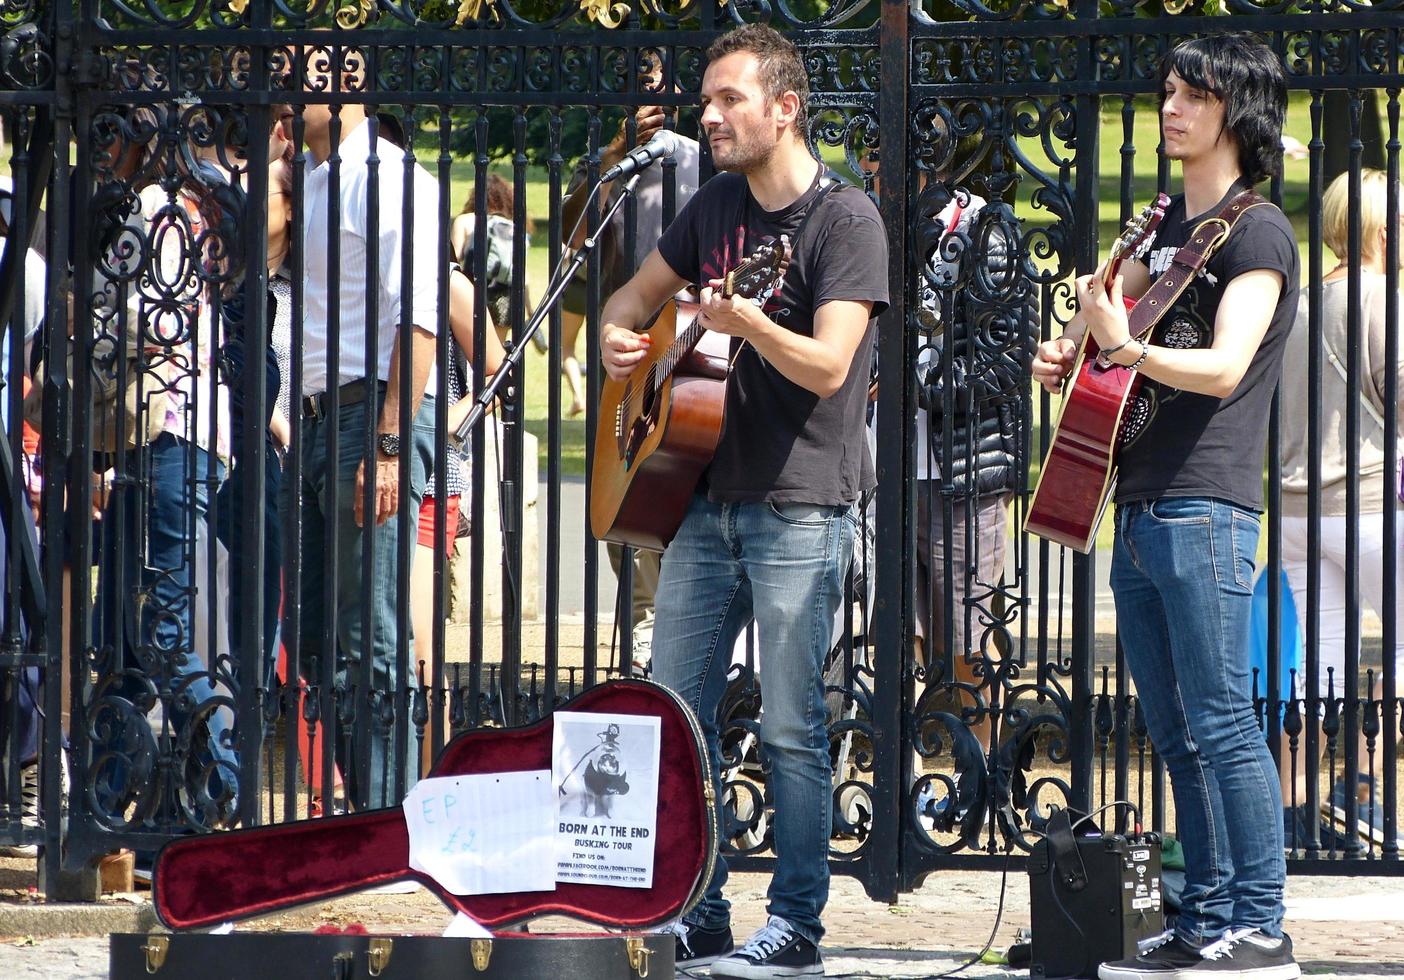 greenwich, londen, engeland, 1 juli 2014, jonge straatartiesten die akoestische muziek spelen met gitaren in de historische binnenstad van greenwich. busking op straatconcept. Engeland. foto